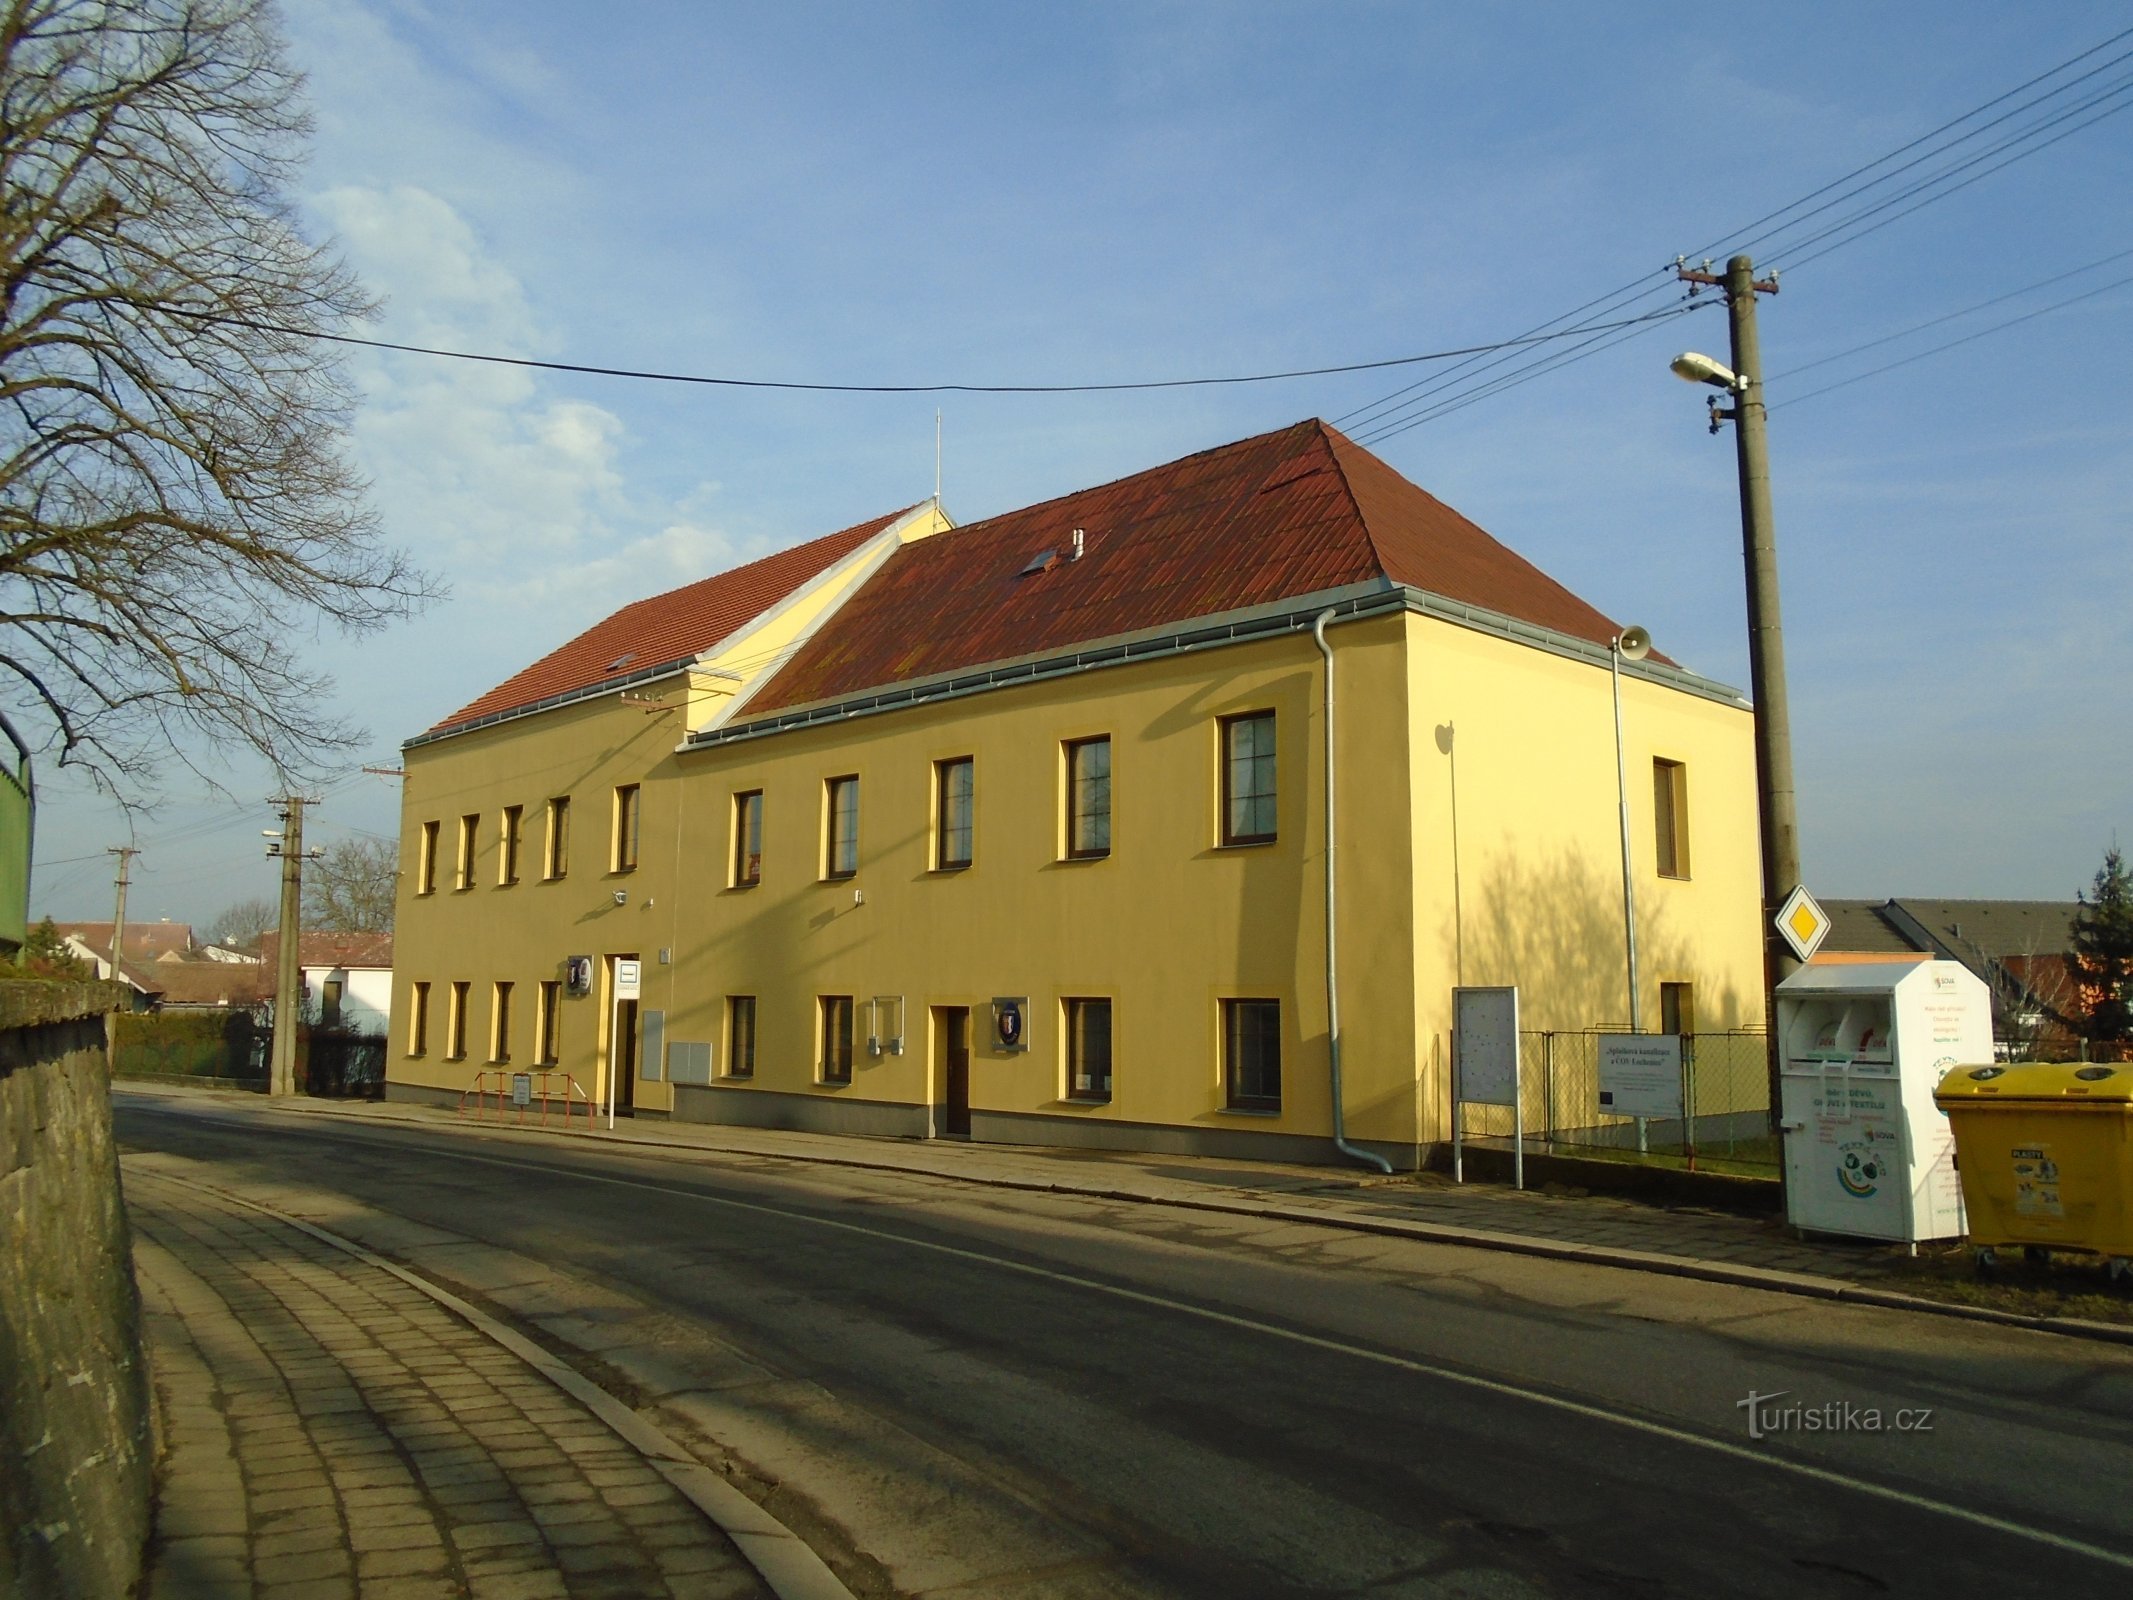 Ufficio comunale (Lochenice)